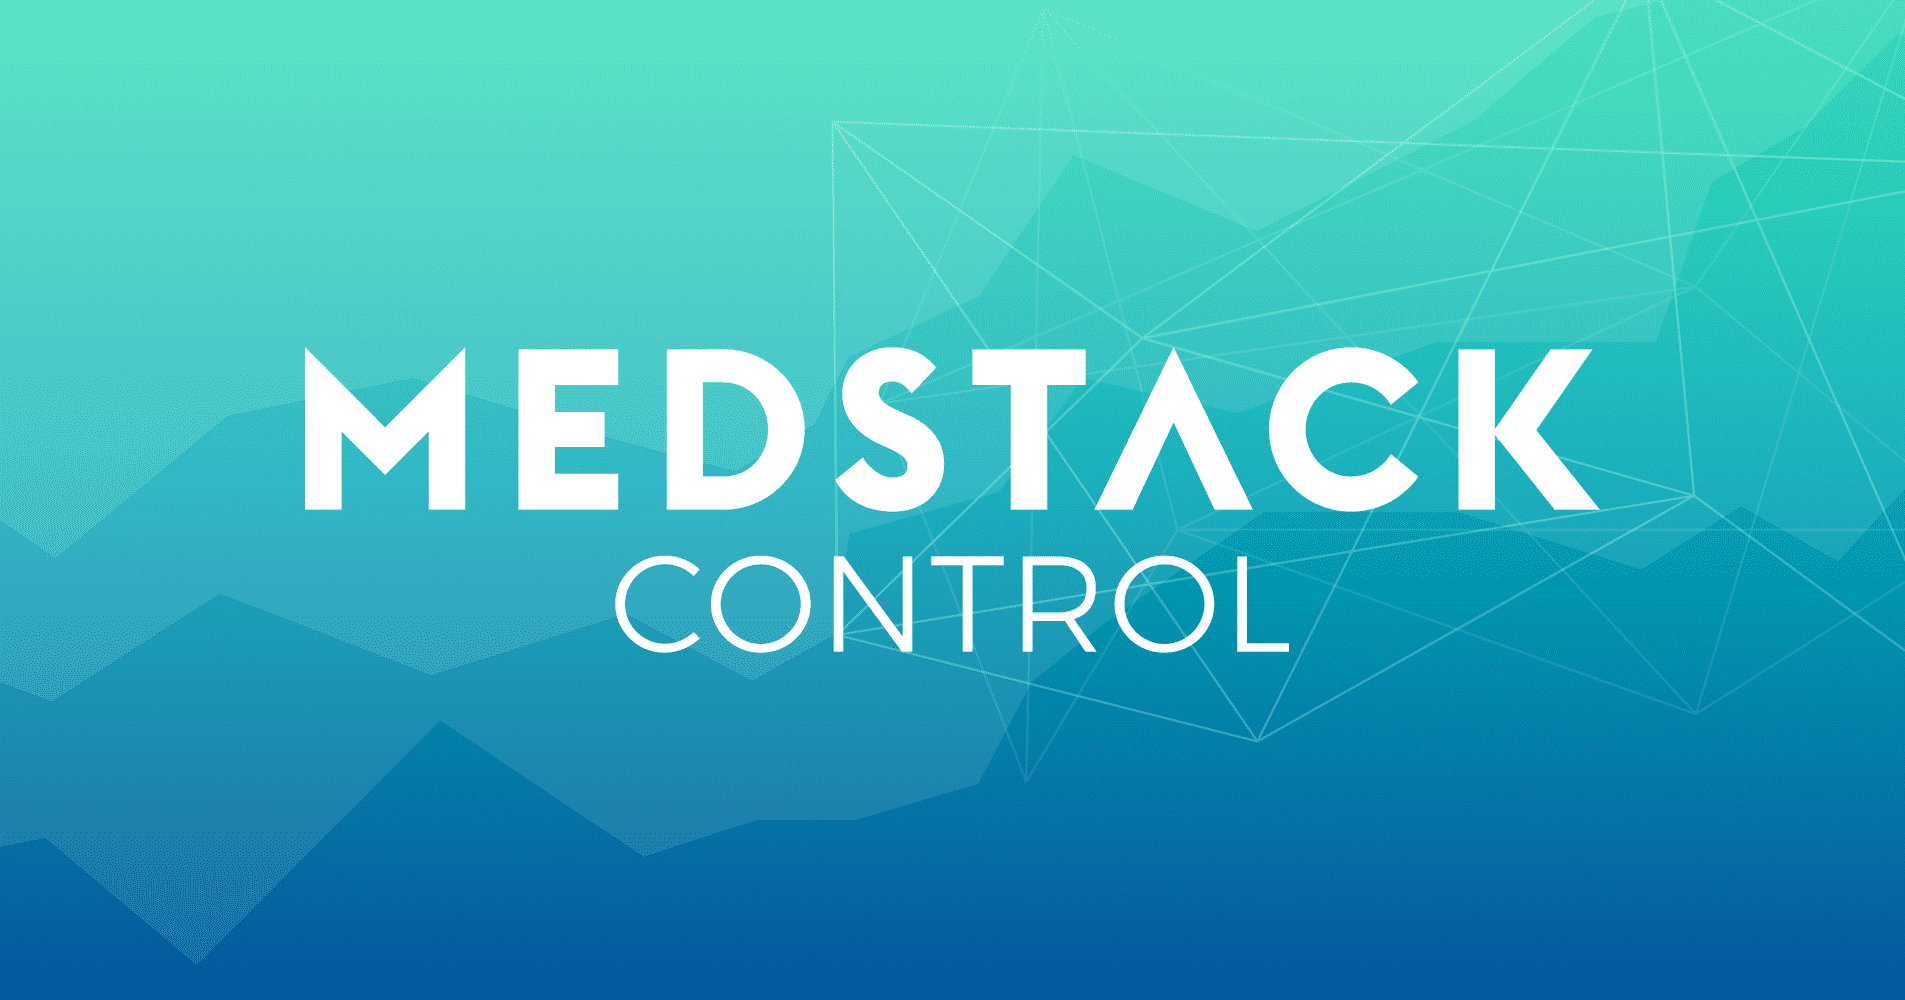 medstackcontrol-blog